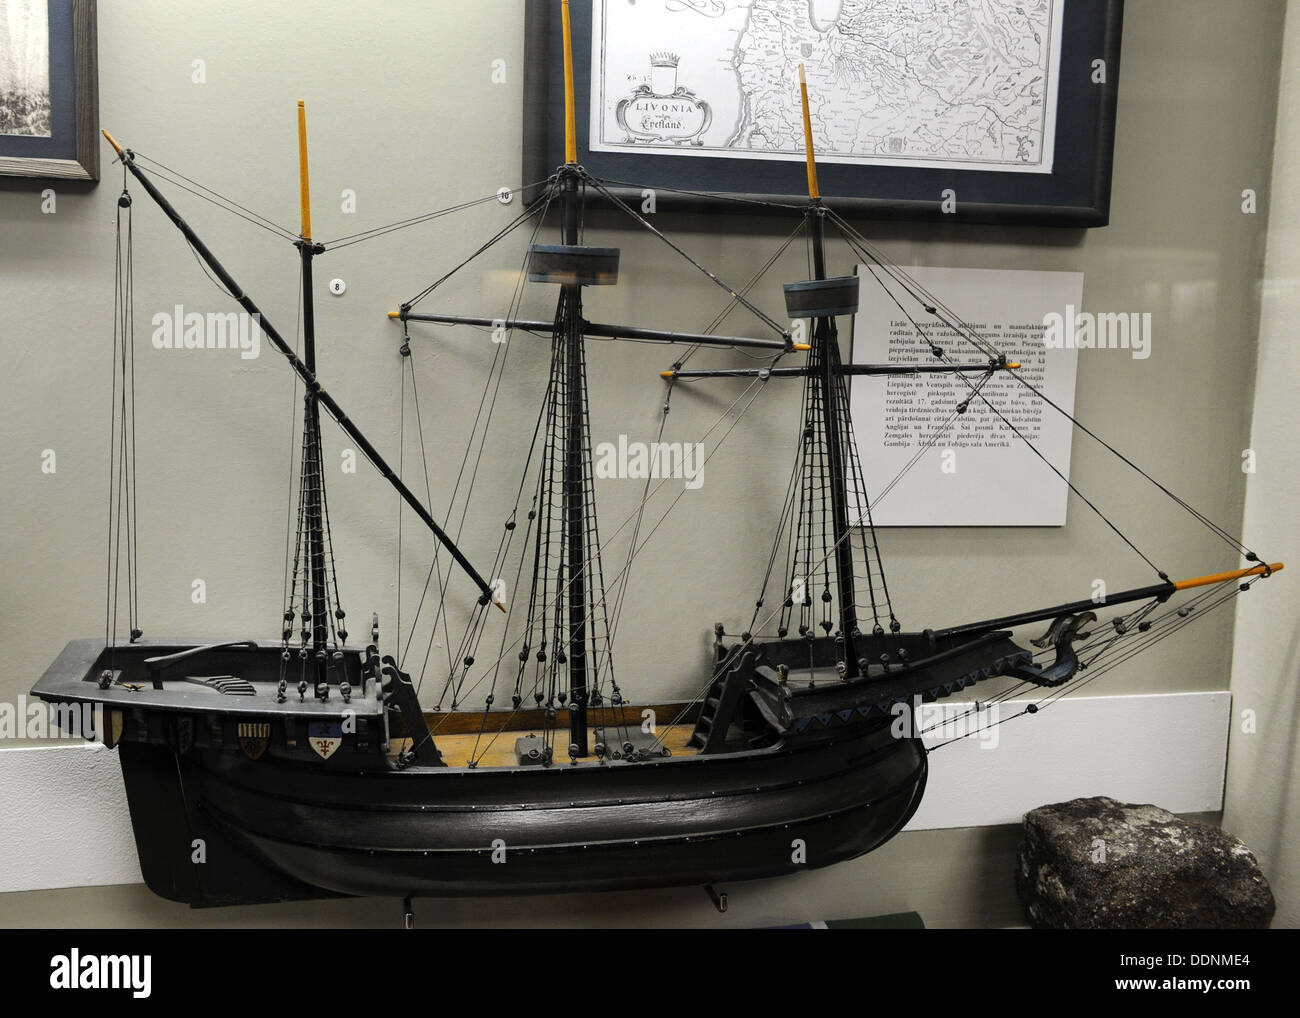 Hokl oder cholke, Boot in Nordeuropa und Schiff waren weit verbreitet. Modell. Museum of History und Navigation. Riga Stockfoto